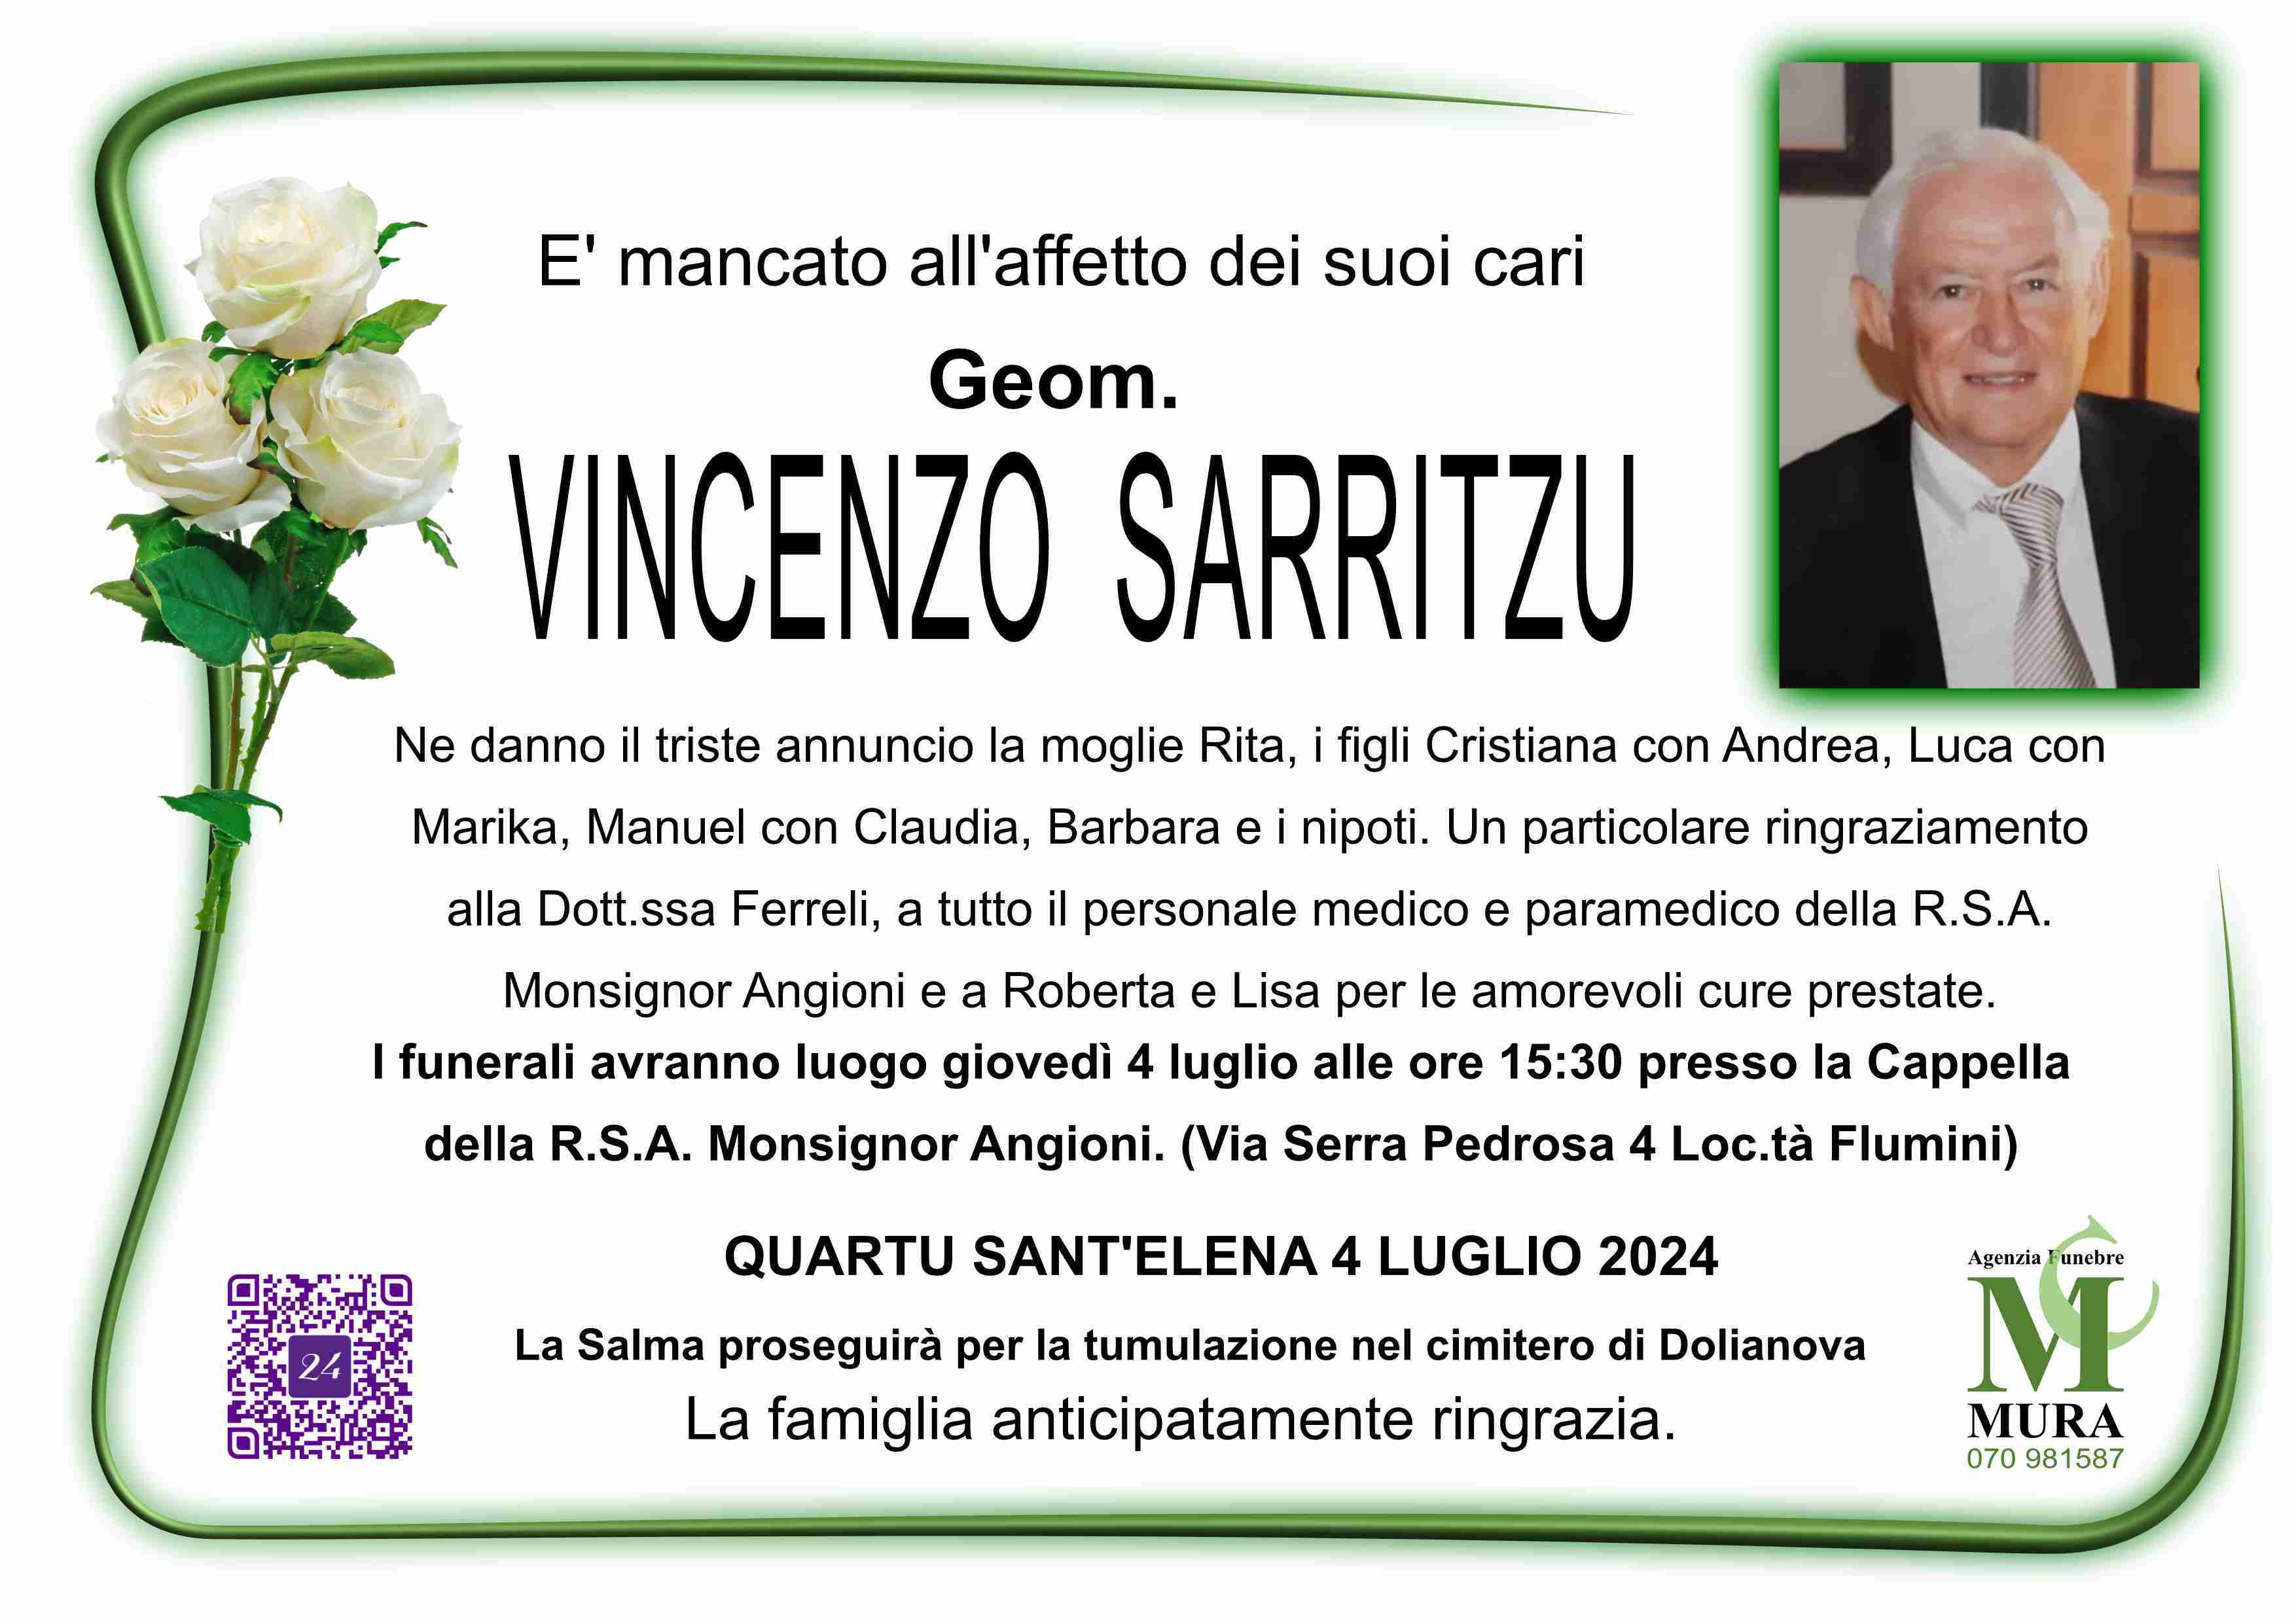 Vincenzo Sarritzu